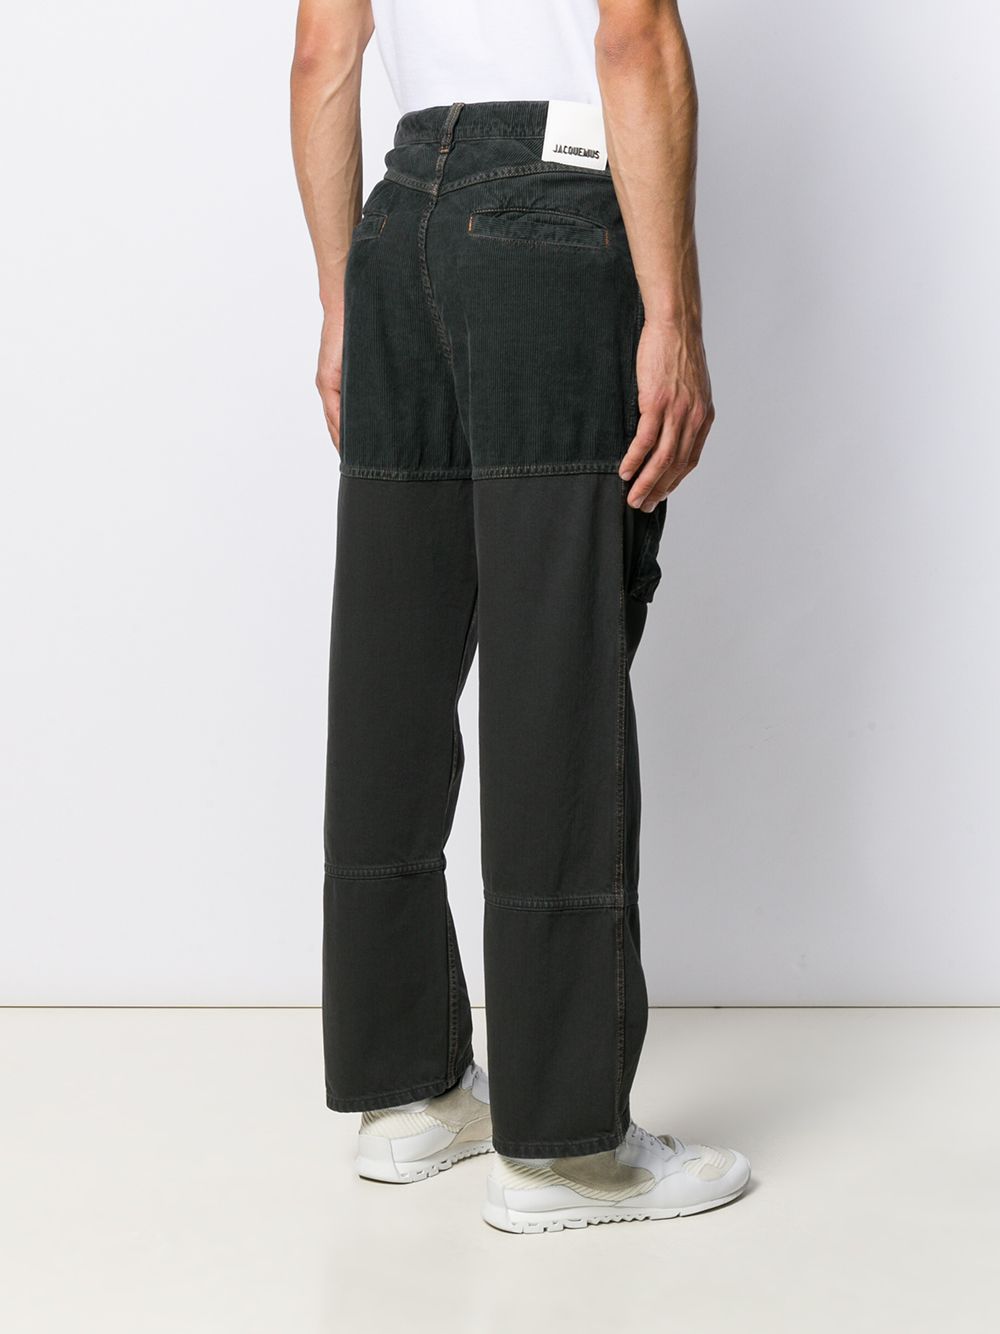 фото Jacquemus джинсы с вельветовыми вставками